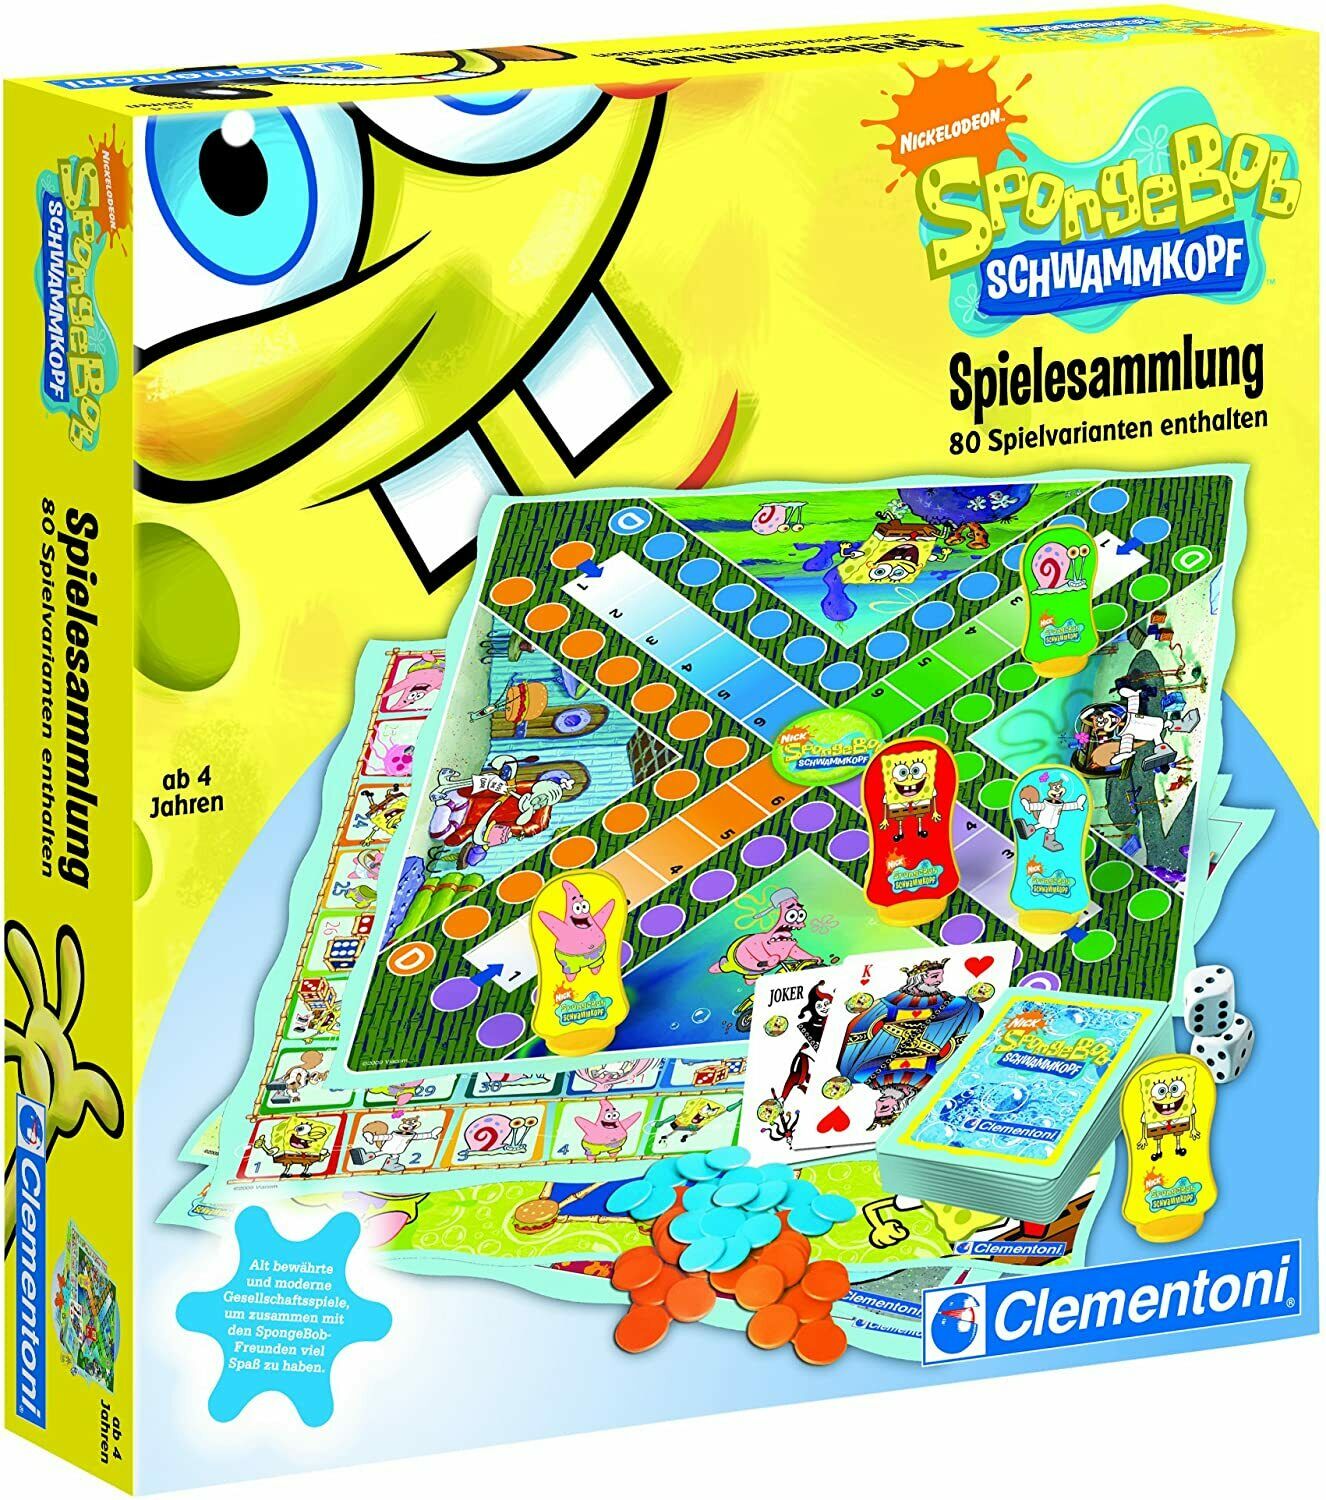 Bild zu Clementoni Spongebob Schwammkopf Gesellschaftsspiele-Set für 16,14€ (Vergleich: 18,99€)